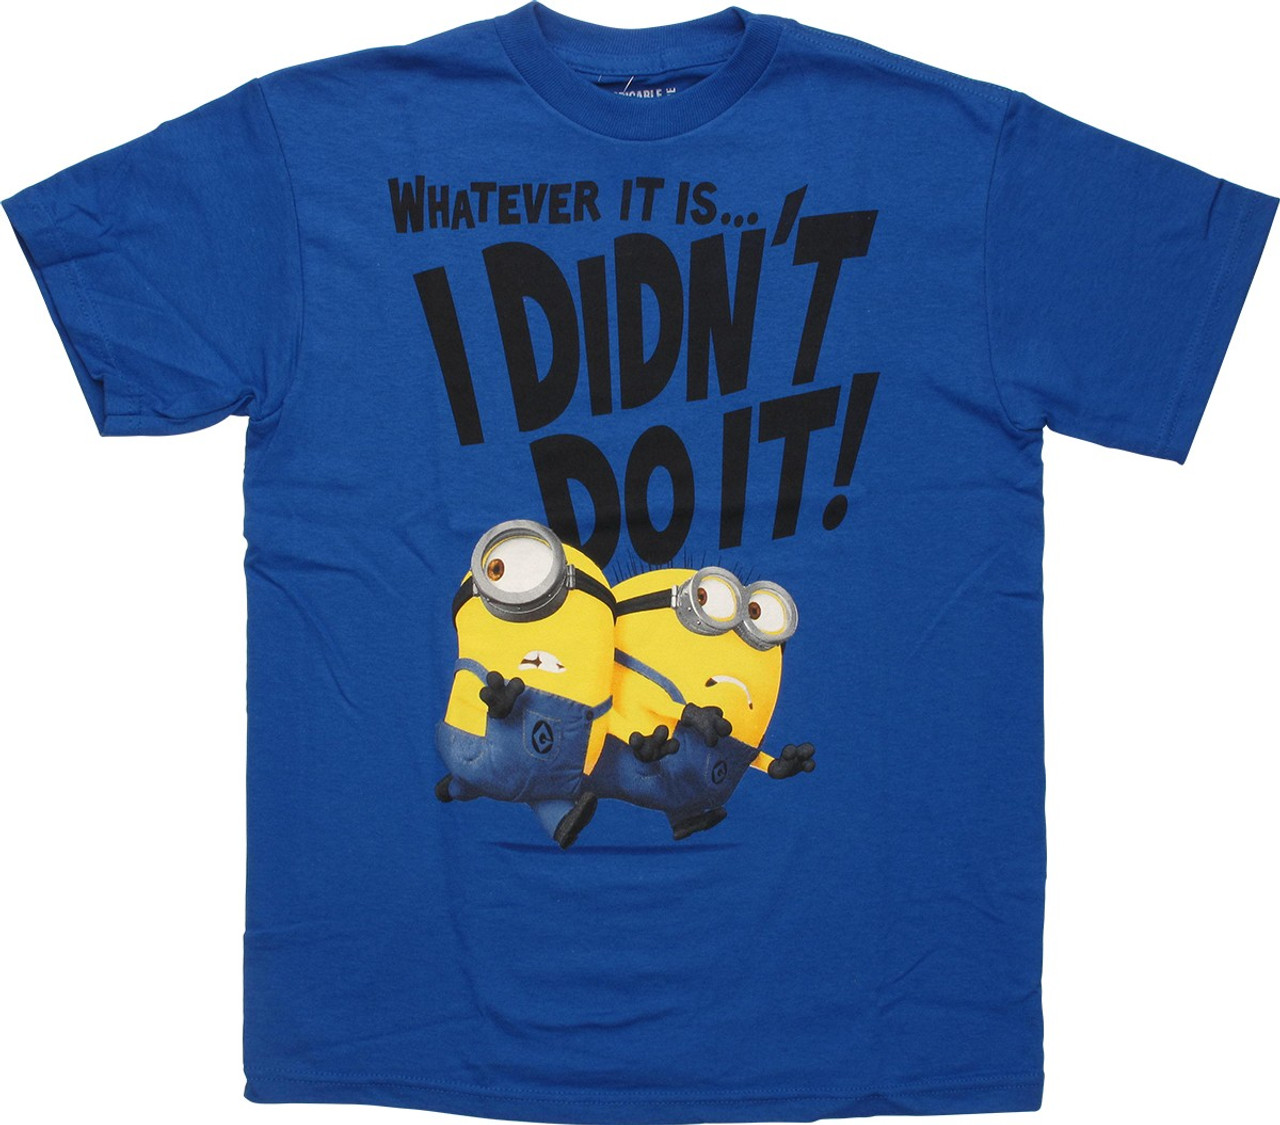 TMNT Minions Kids T-Shirt